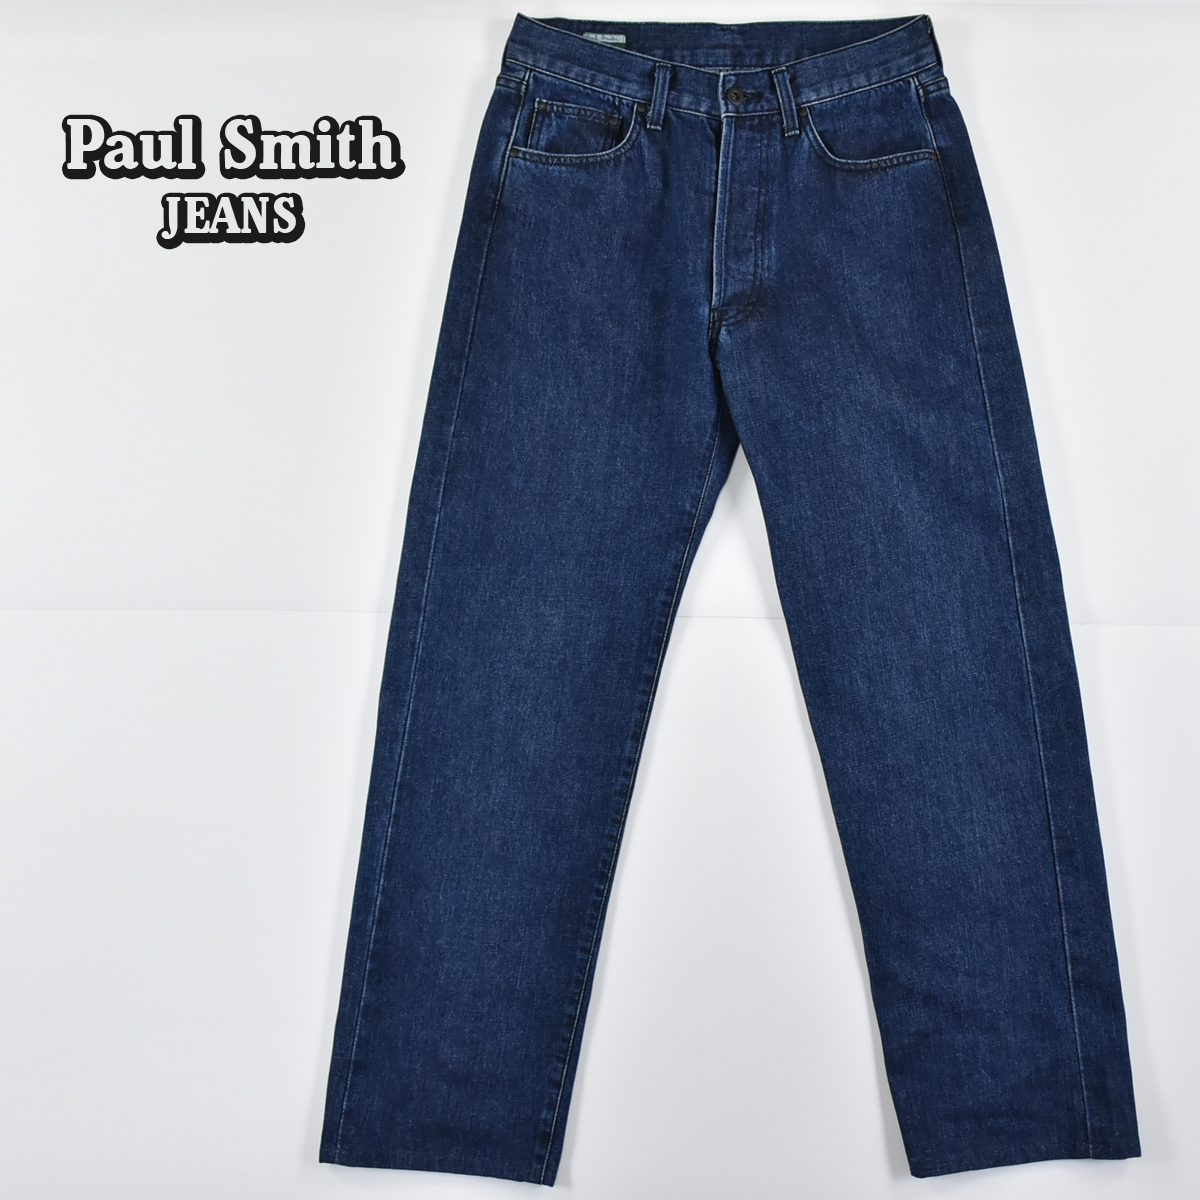 Paul Smith JEANS ポールスミス ジーンズ 日本製 ボタンフライ デニム ジーンズ パンツ インディゴ メンズ 31